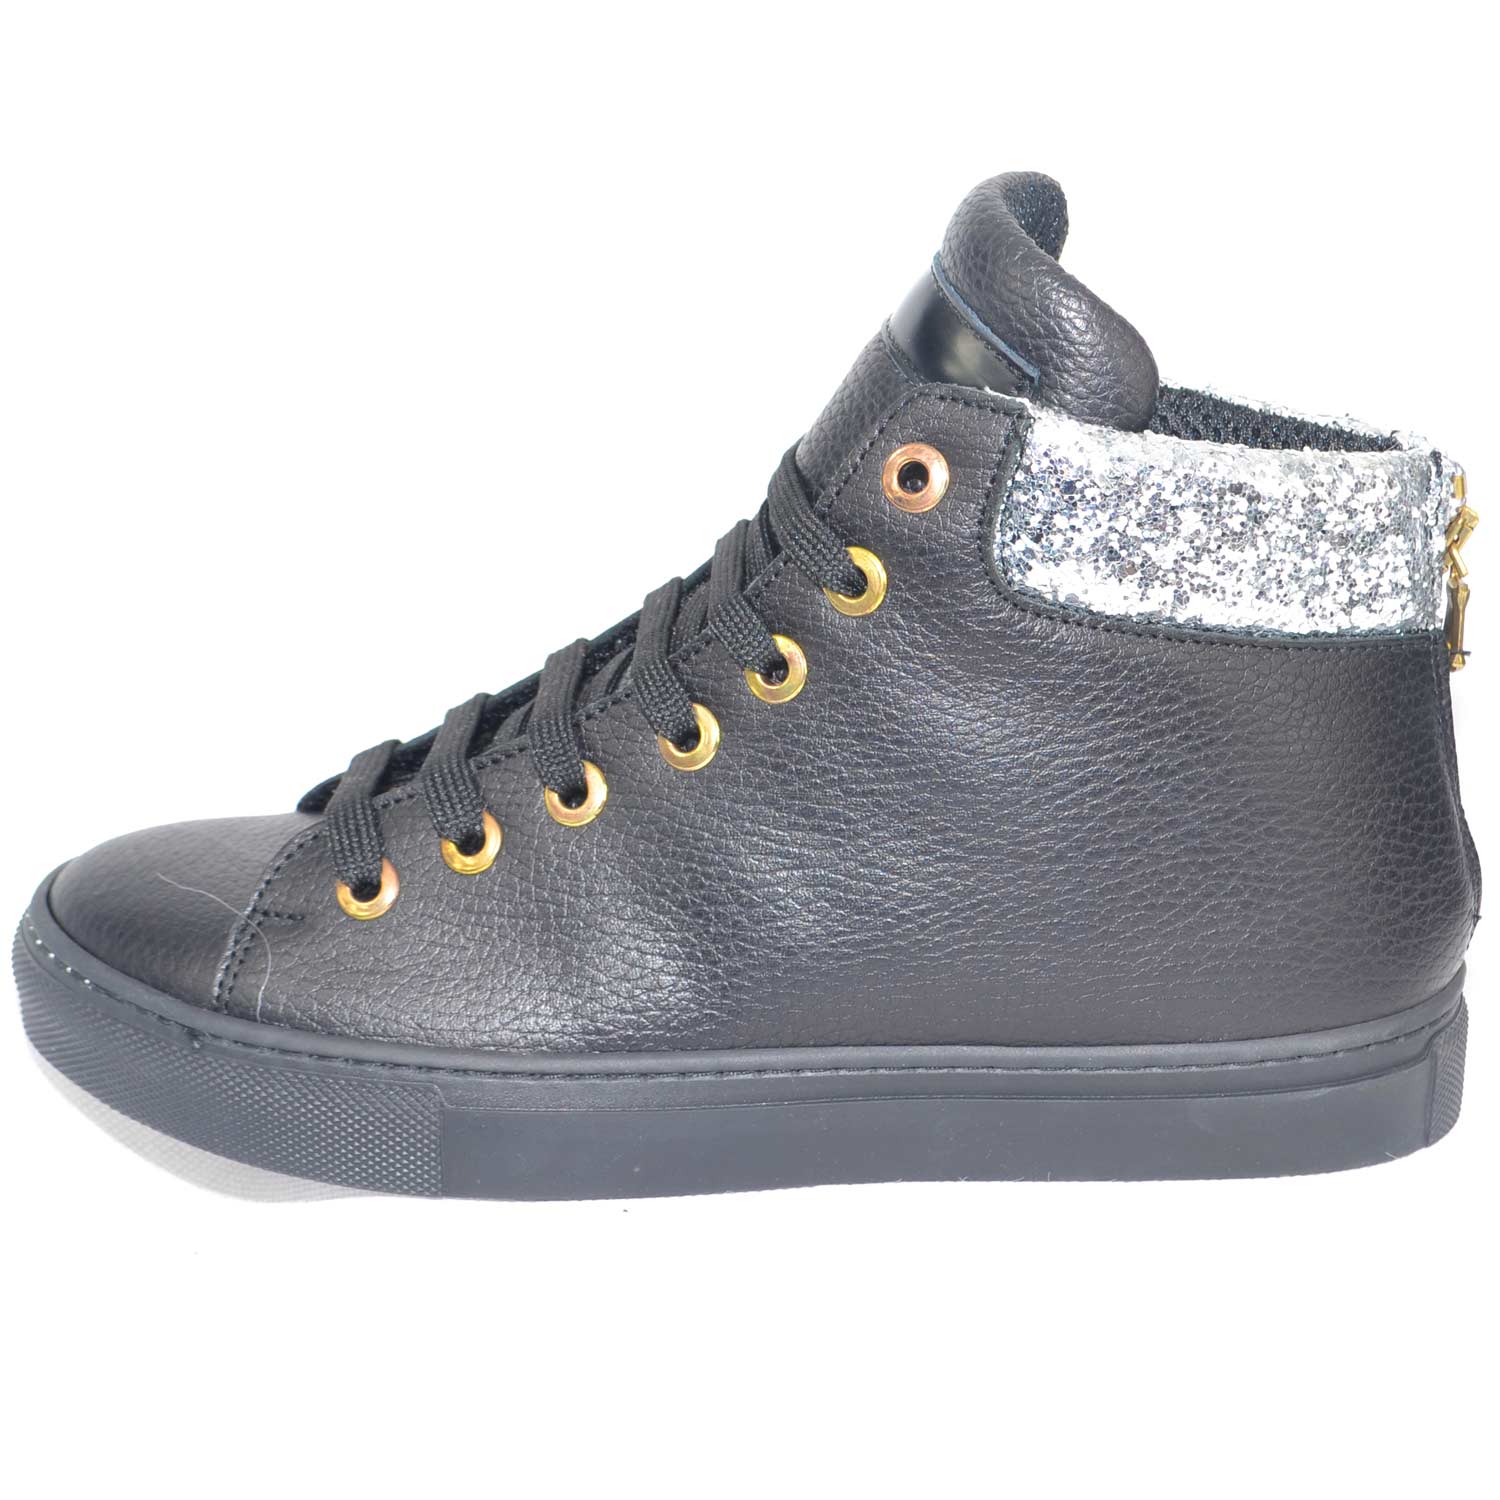 Sneakers altascarpe donna in vera pelle bortolata nera con inserto glitter argento e zip dorata.